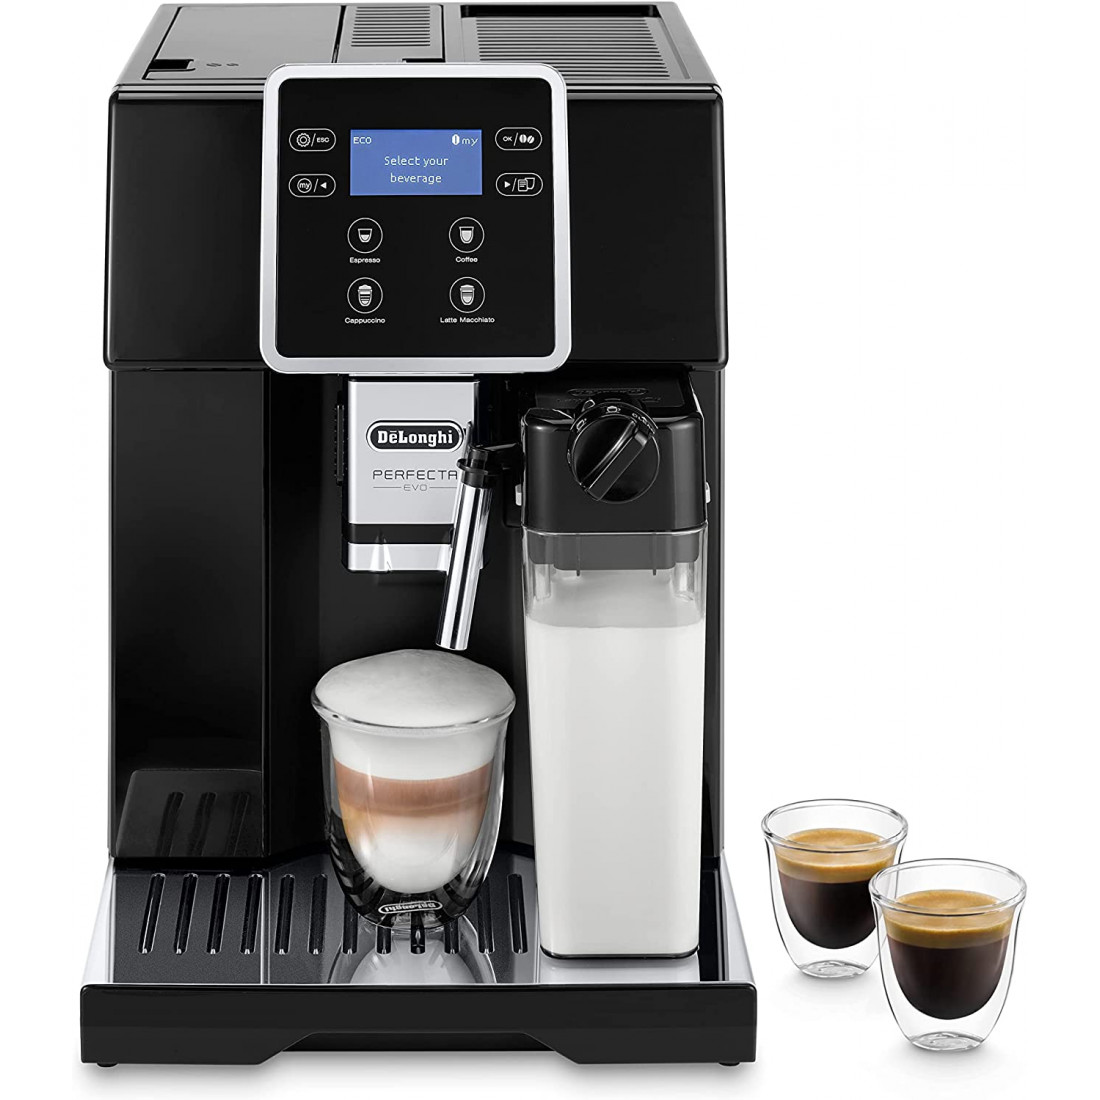 Máy pha cà phê hoàn toàn tự động Delonghi Perfecta Evo ESAM 420.40.B